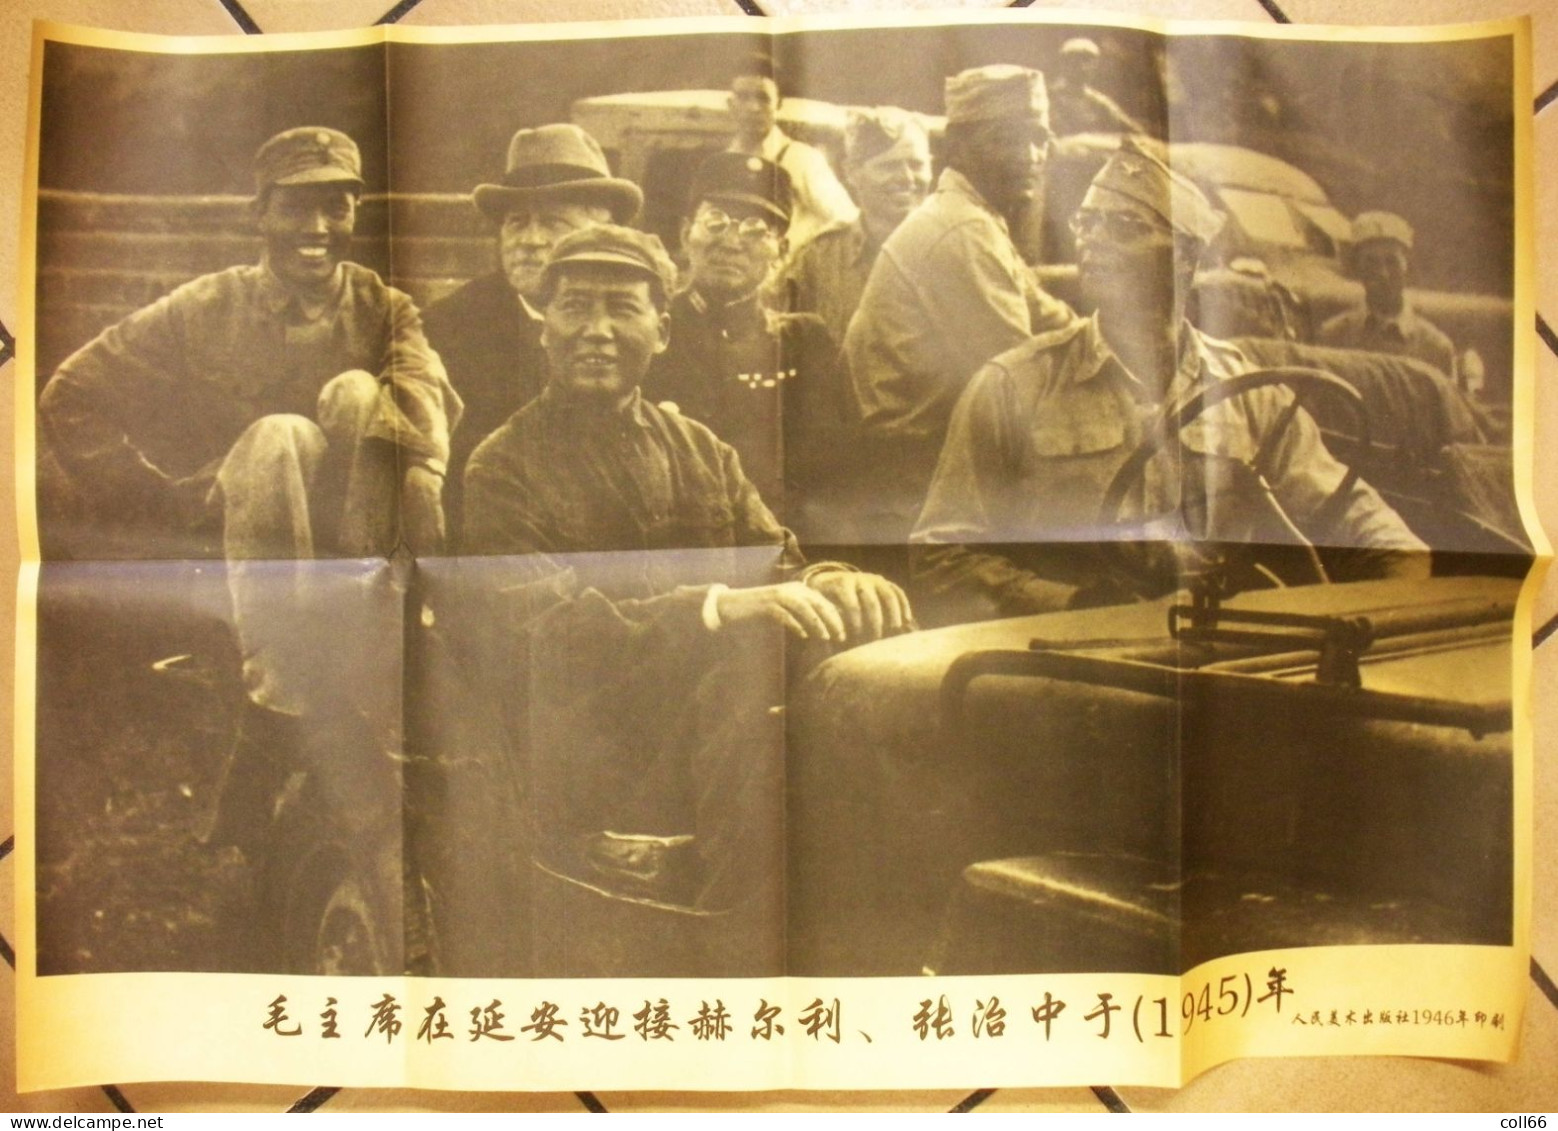 1945 Affiche Propagande Communiste Chine Jeep US Avec Mao & Dignitaires Américains & Chinois 52x75 Cm Port Franco - Affiches